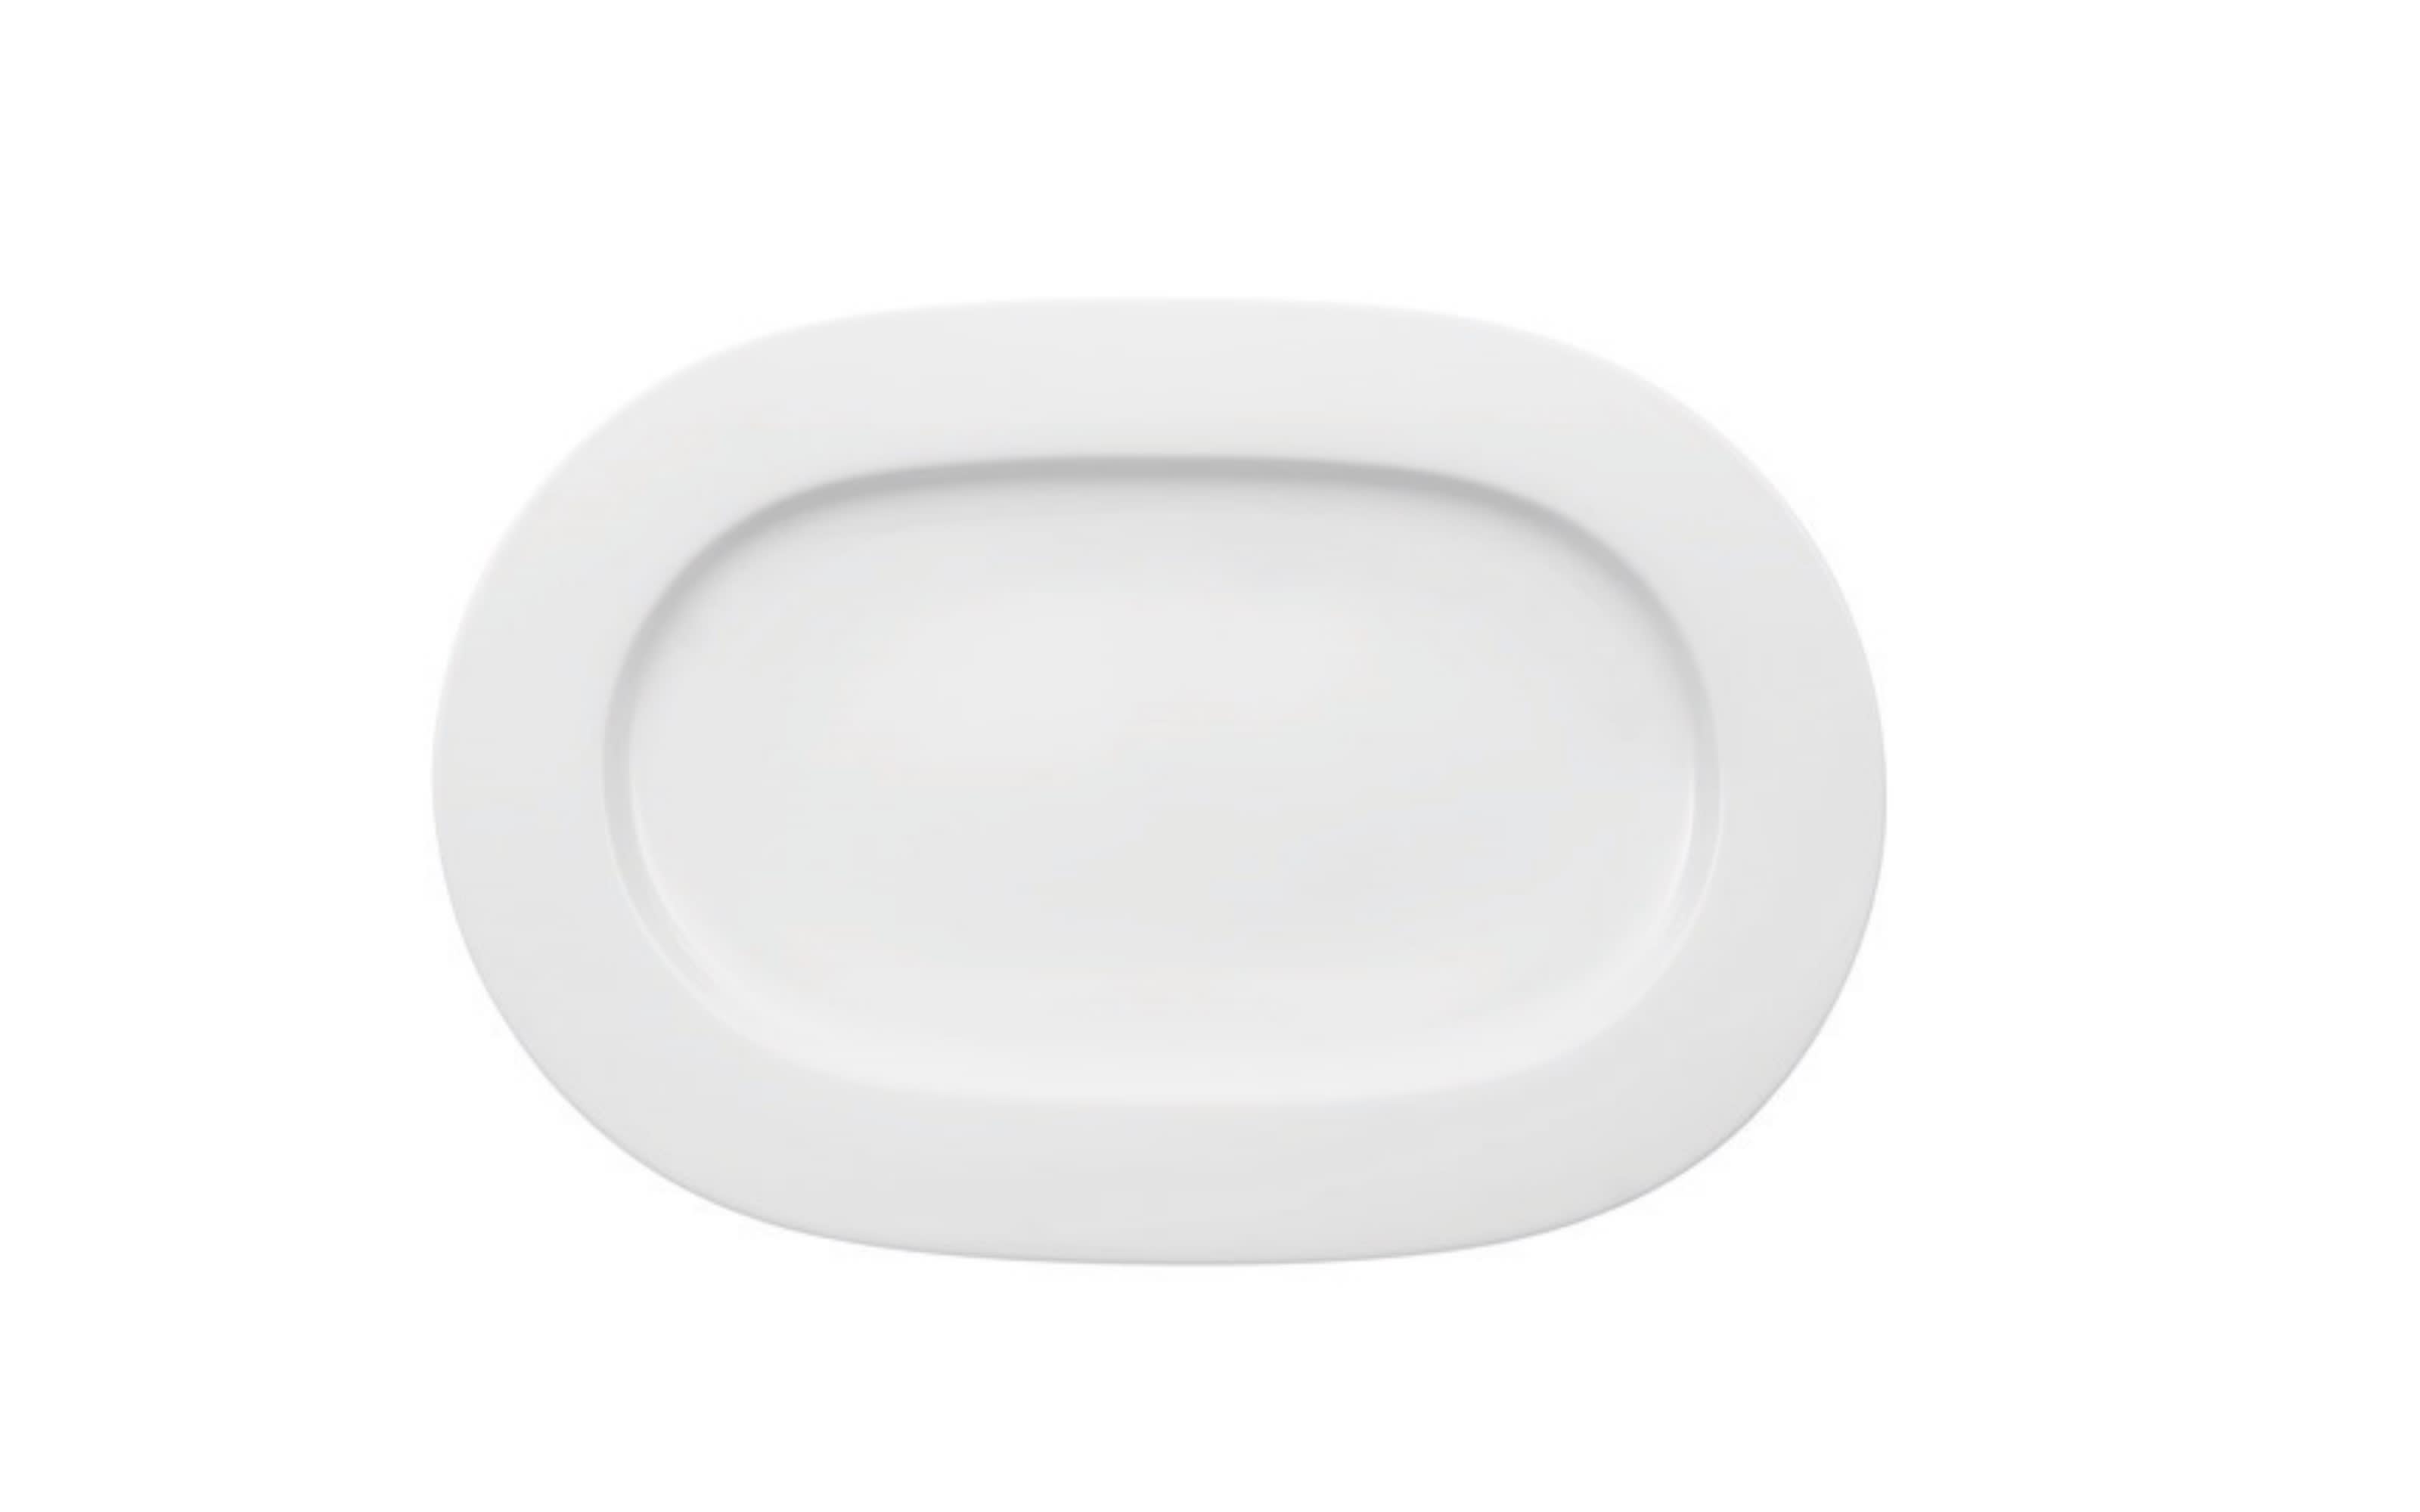 Platte oval Noblesse aus Porzellan in weiß, 34 cm